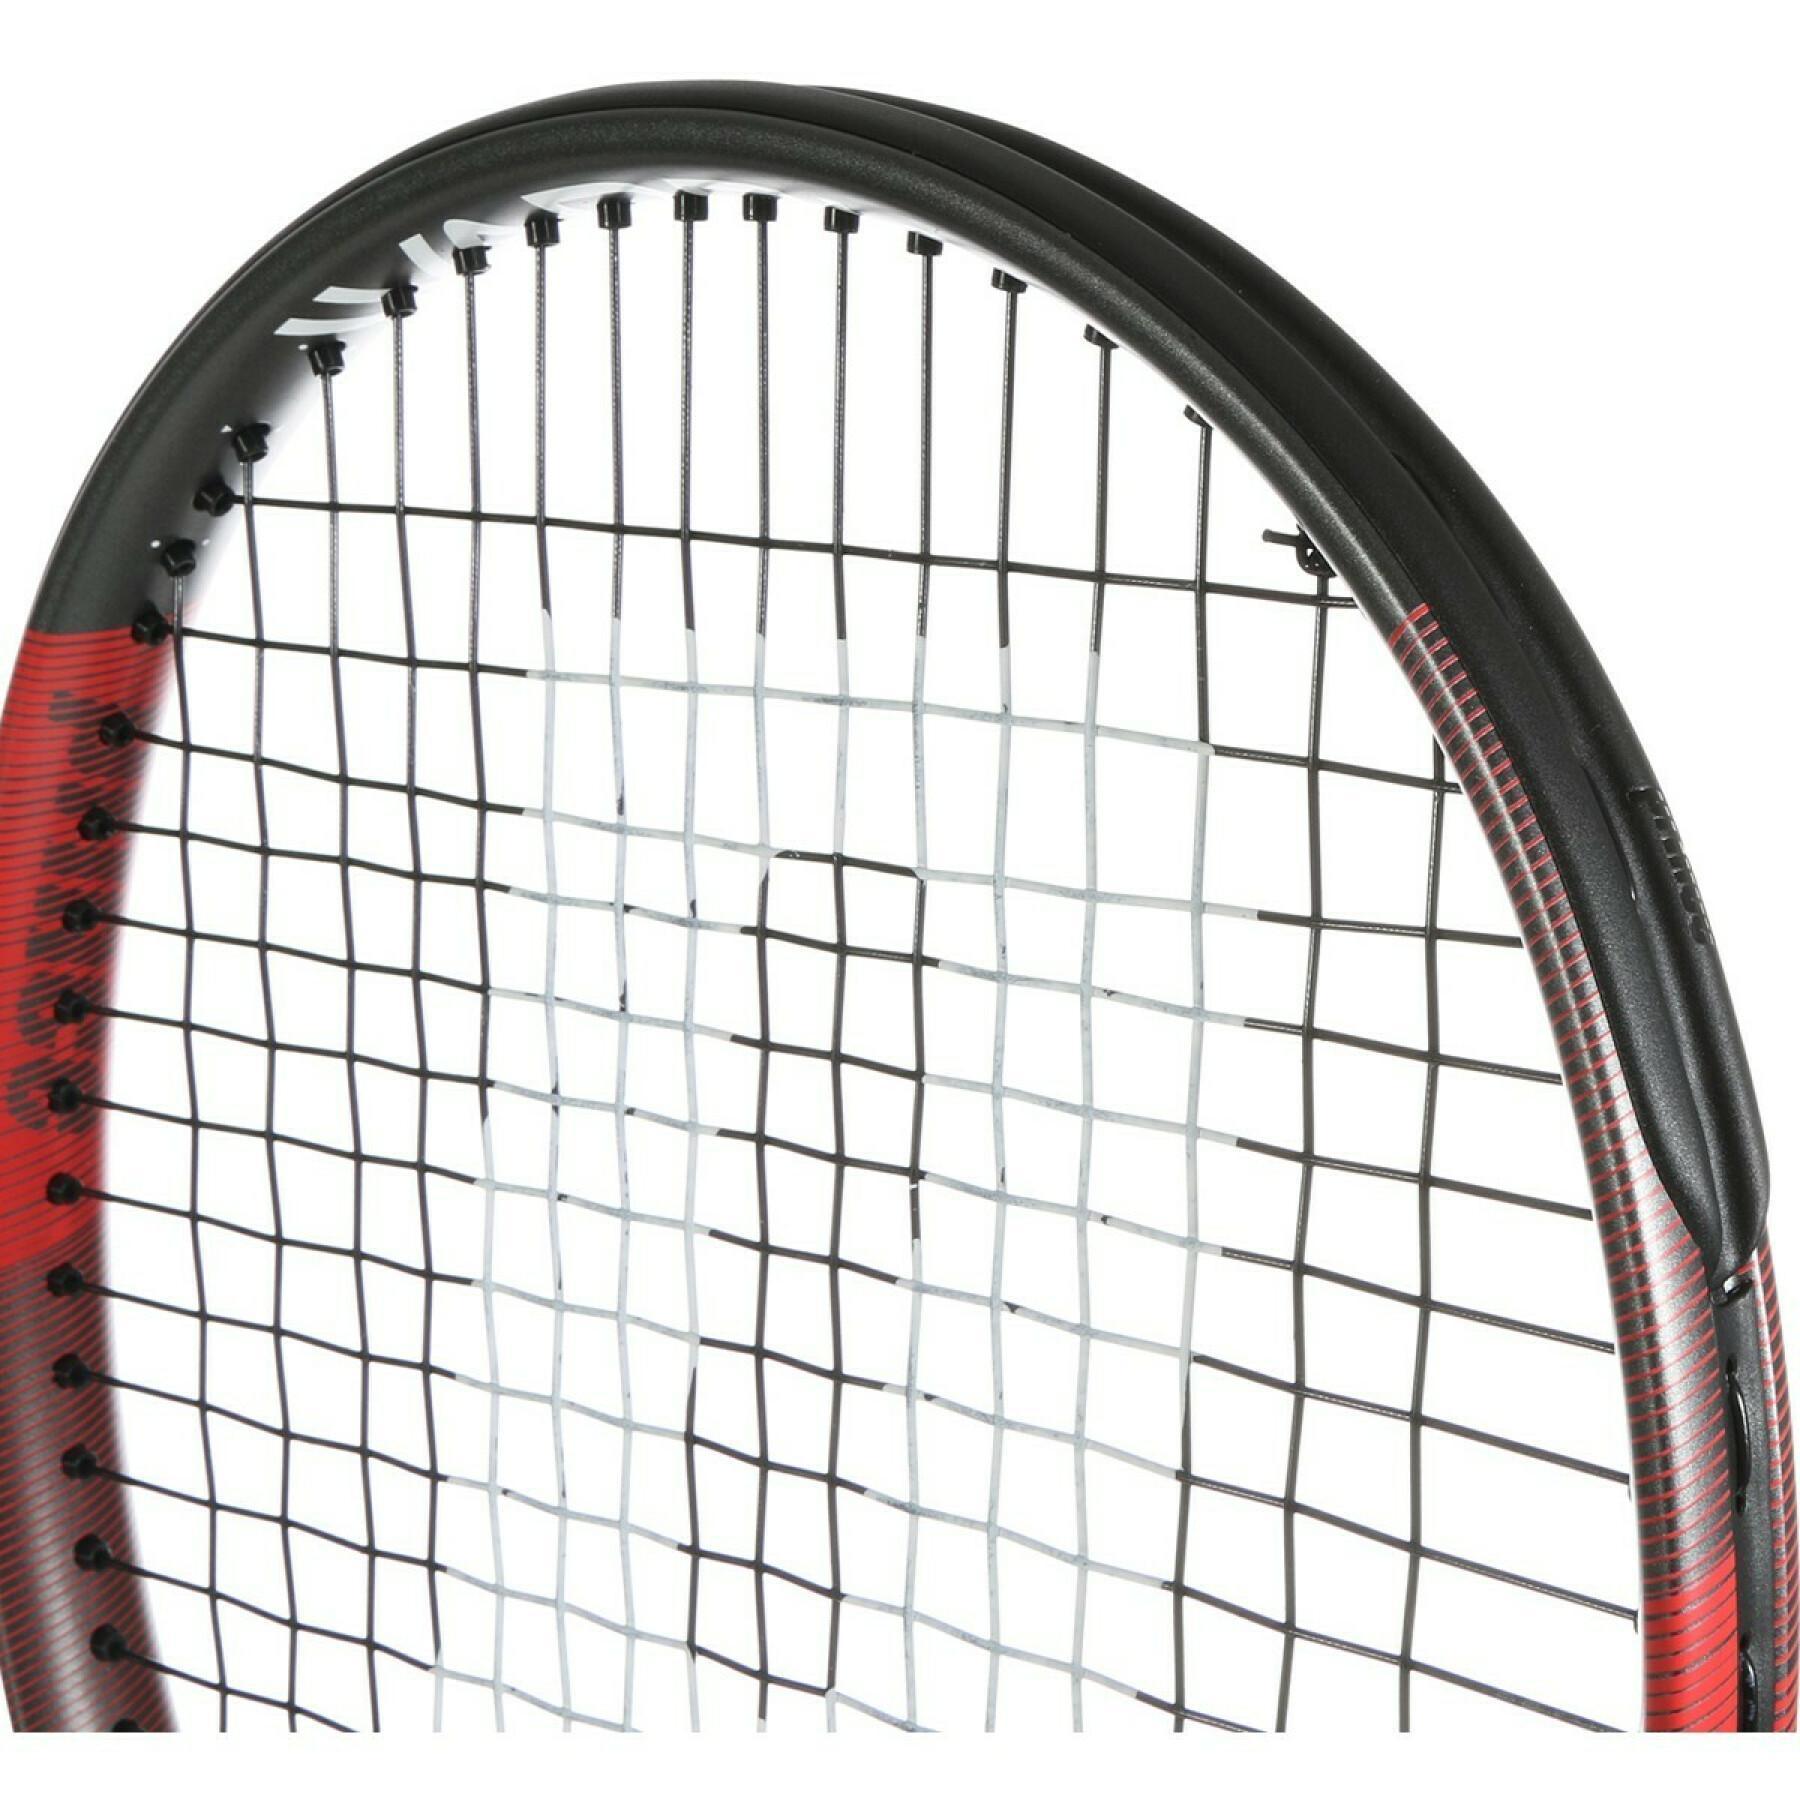 Racchetta da tennis Prince warrior 100 (285g)